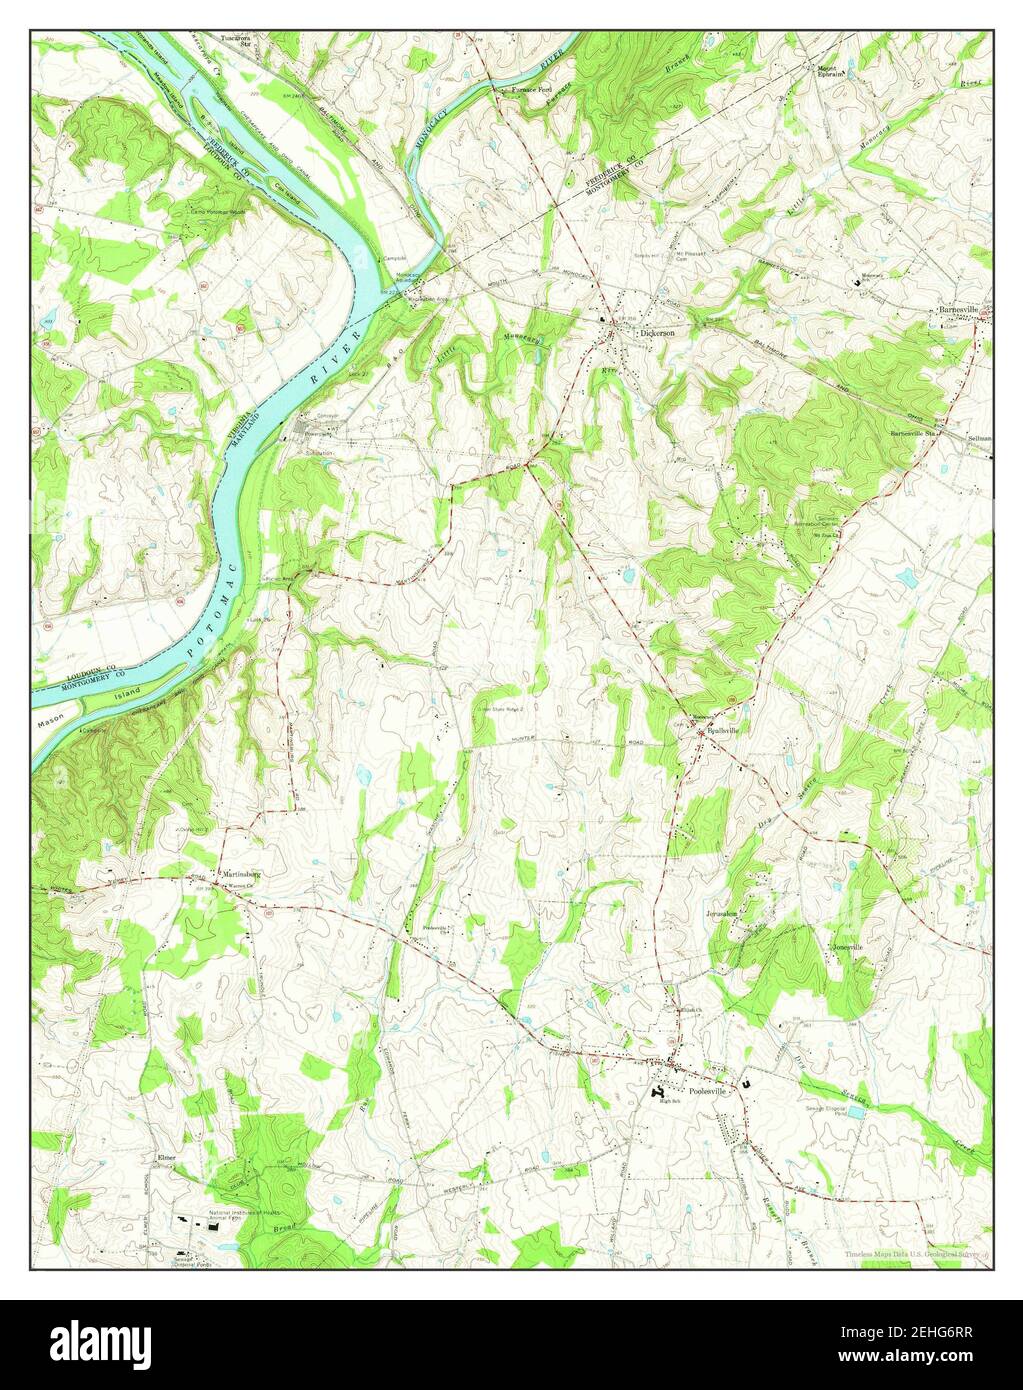 Poolesville, Maryland, Karte 1970, 1:24000, Vereinigte Staaten von Amerika von Timeless Maps, Daten U.S. Geological Survey Stockfoto